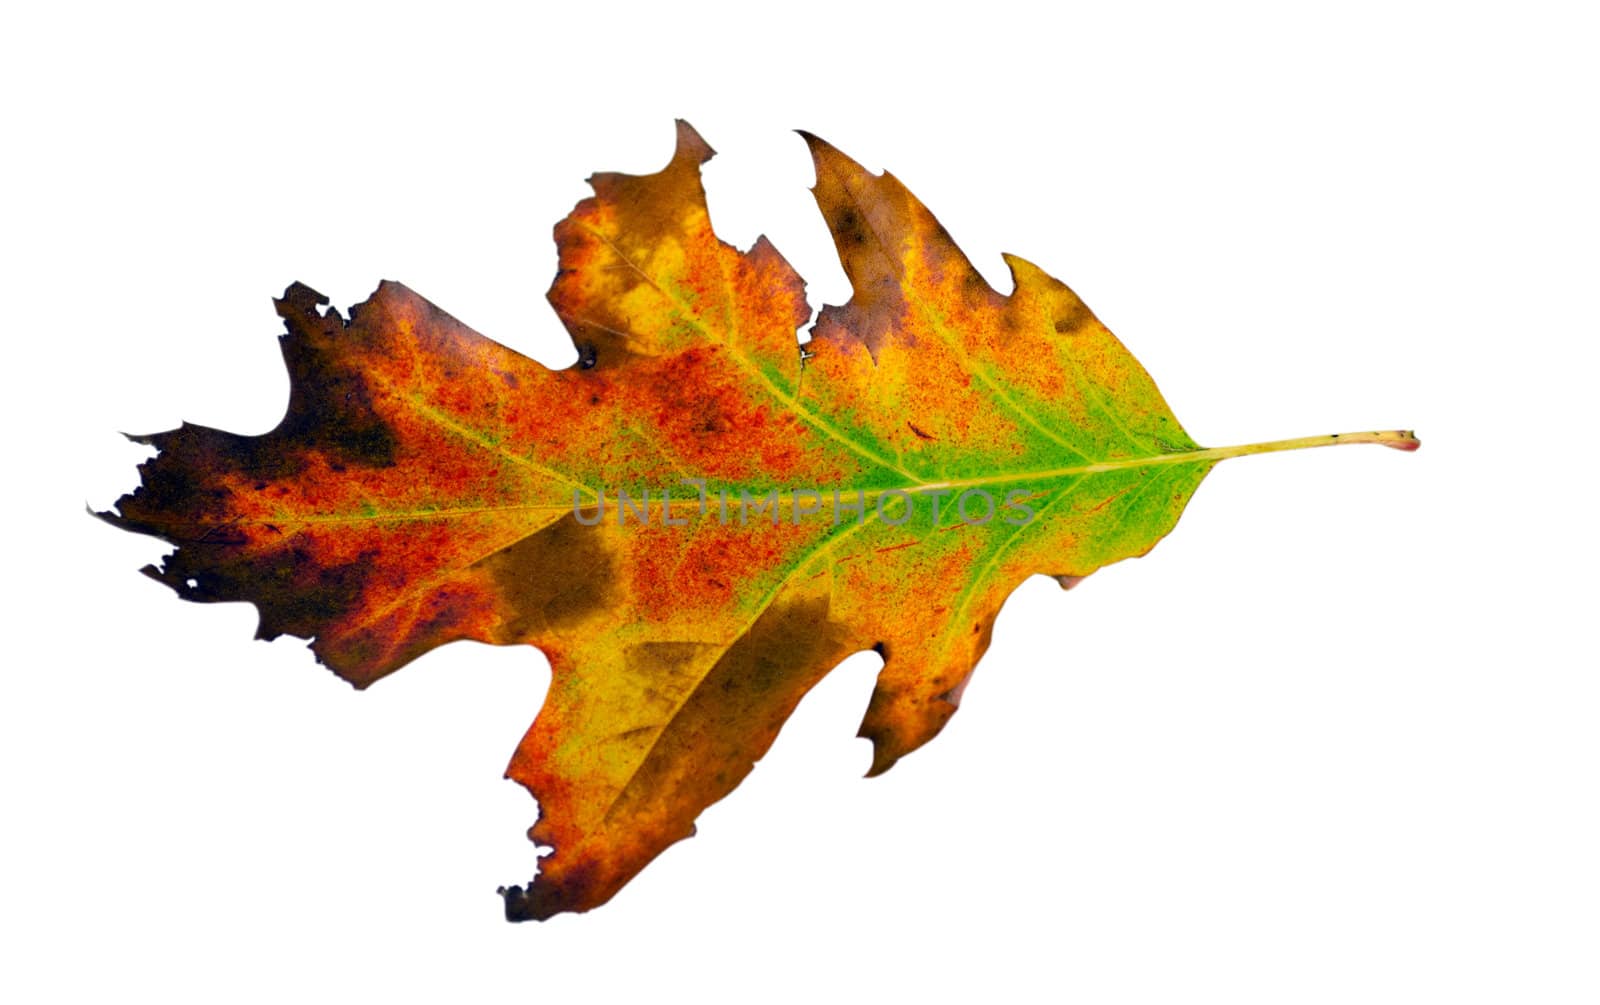 varicoloured decorative oak leaf isolated on white background